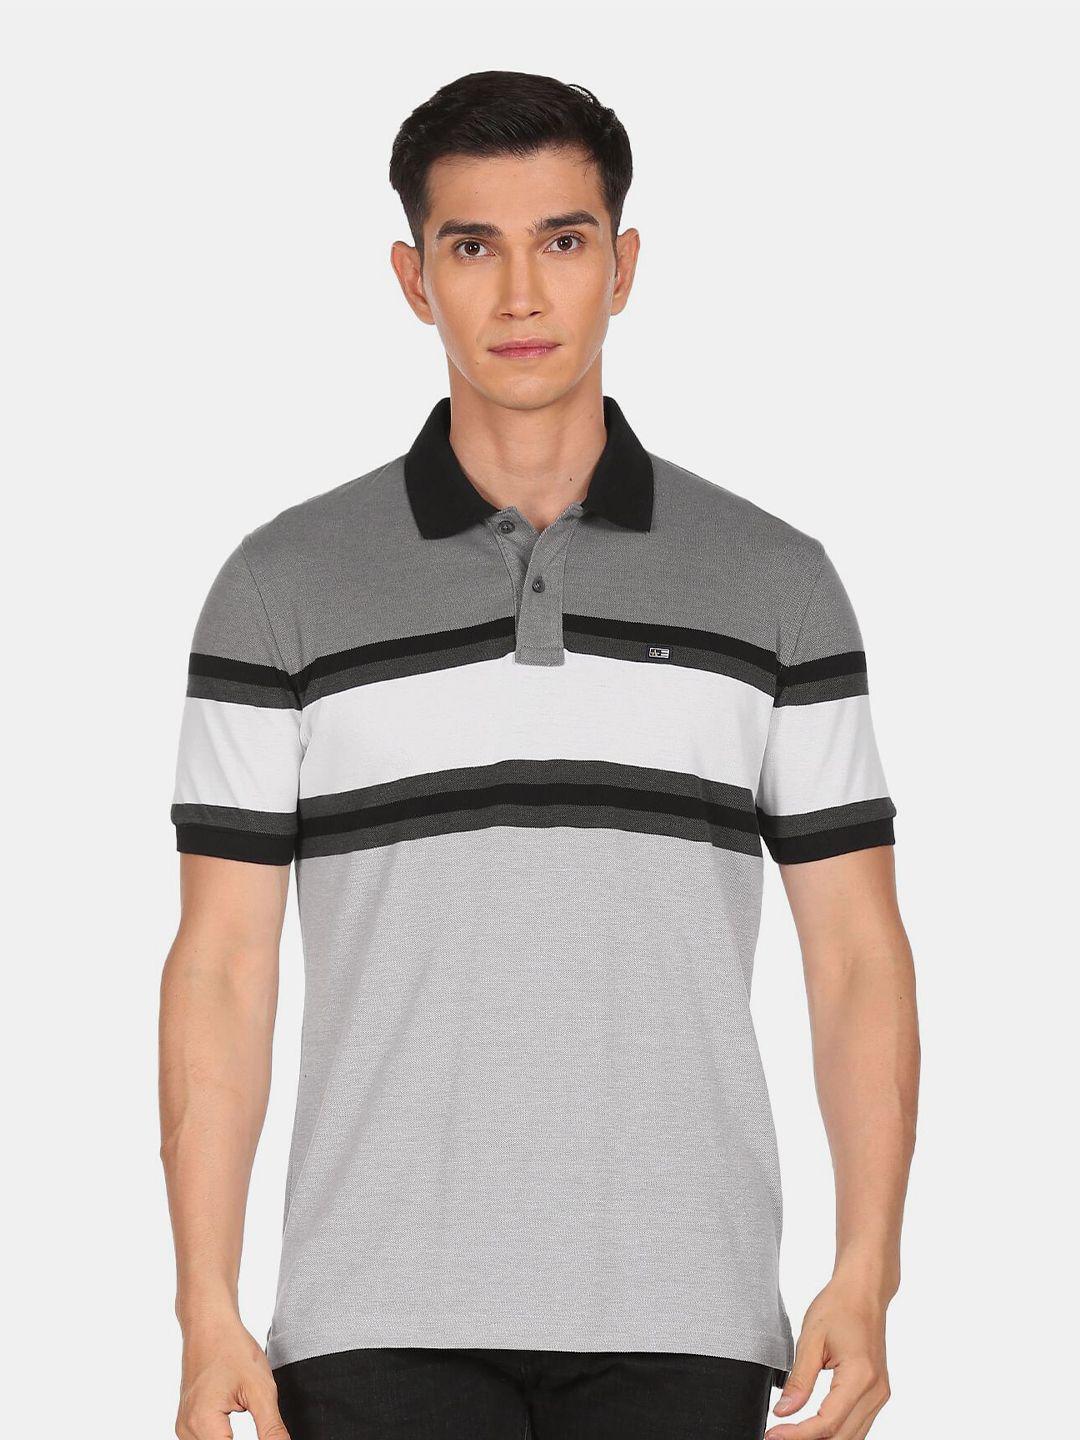 arrow sport men grey & white striped colourblocked polo collar t-shirt